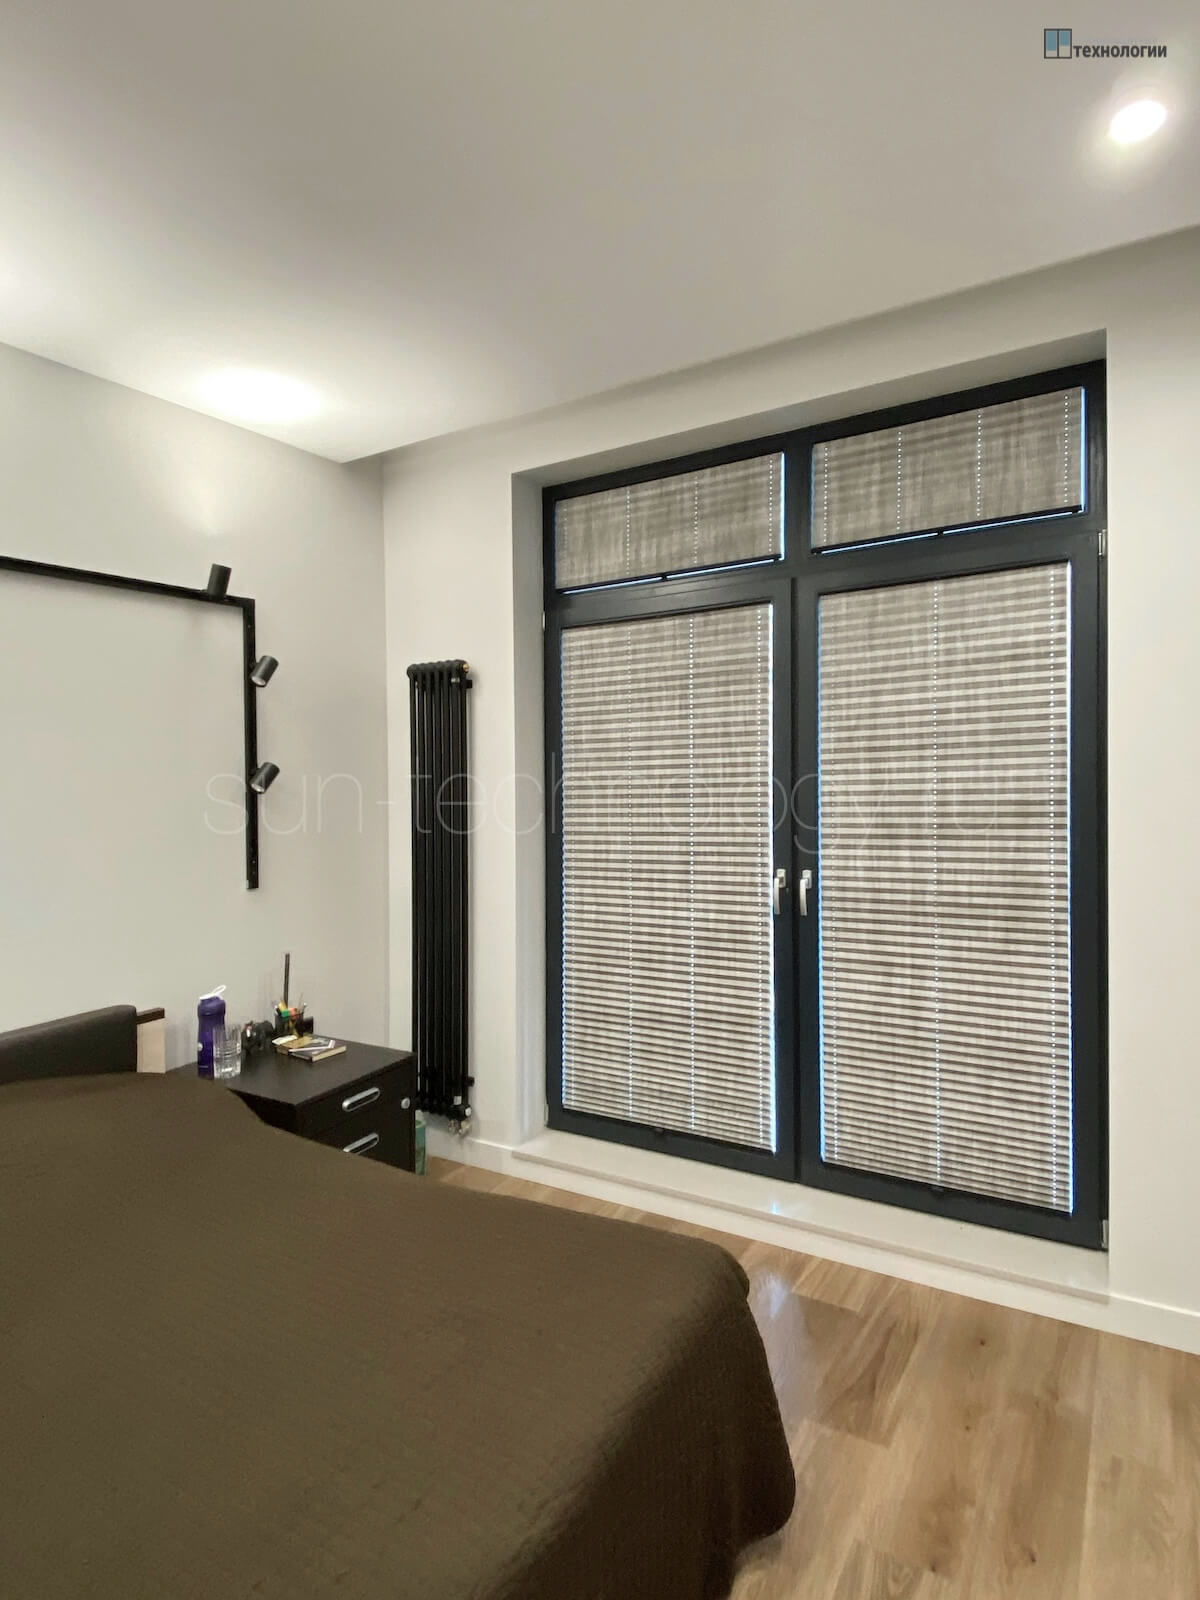 Шторы плиссе с тканью Блэкаут в спальне, темно-серые окна в ЖК "Мэйнстрит", черная комплектация